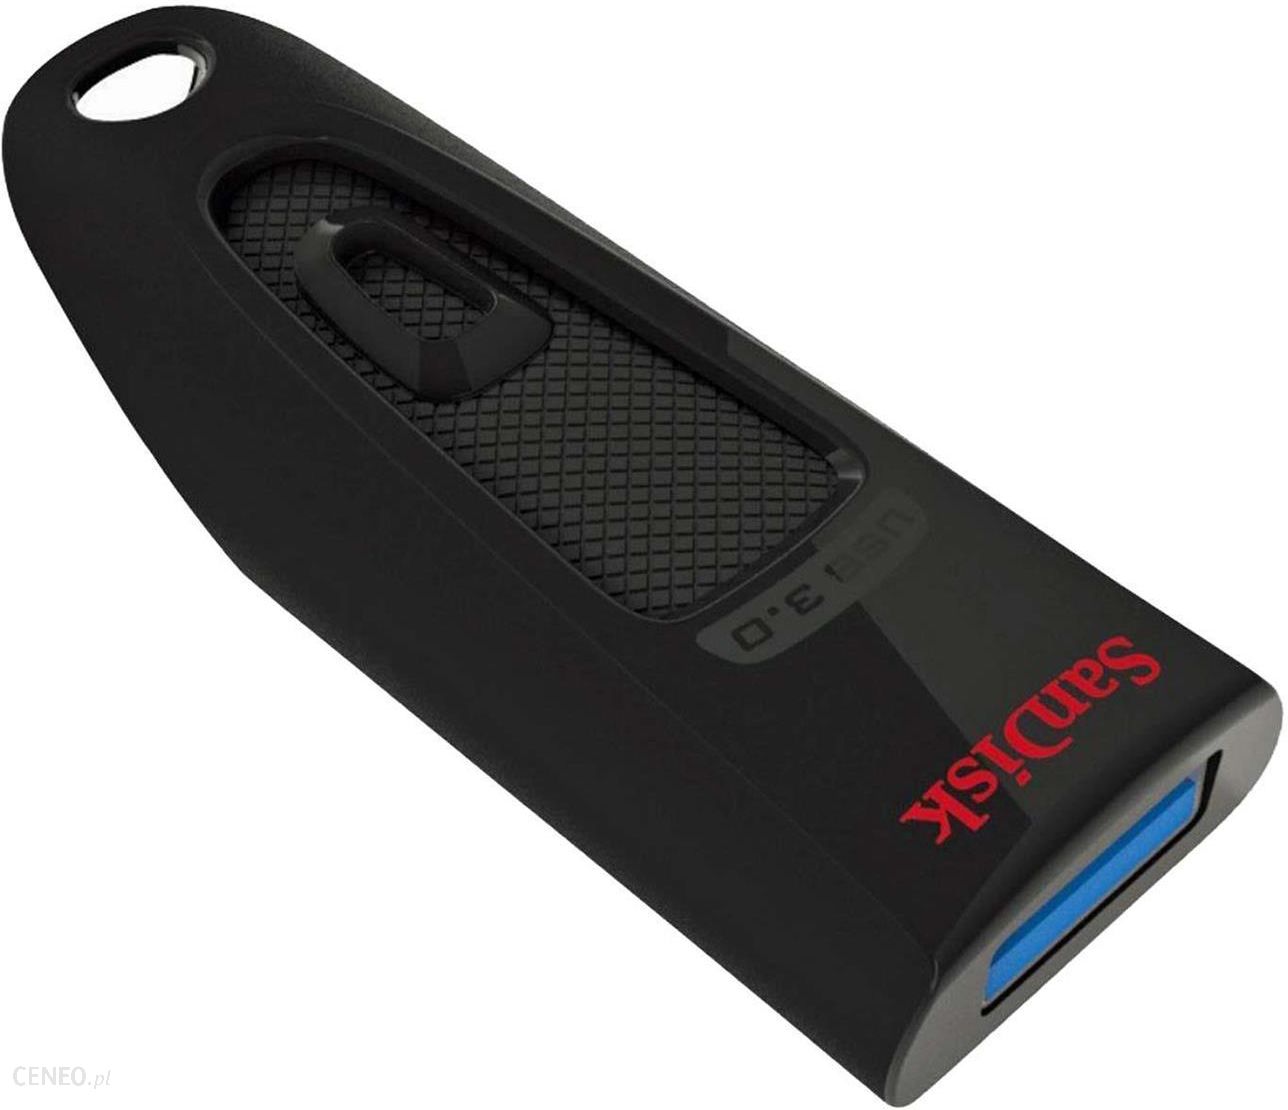 Sandisk Ultra 256GB USB 3.0 (SDCZ48256GU46)